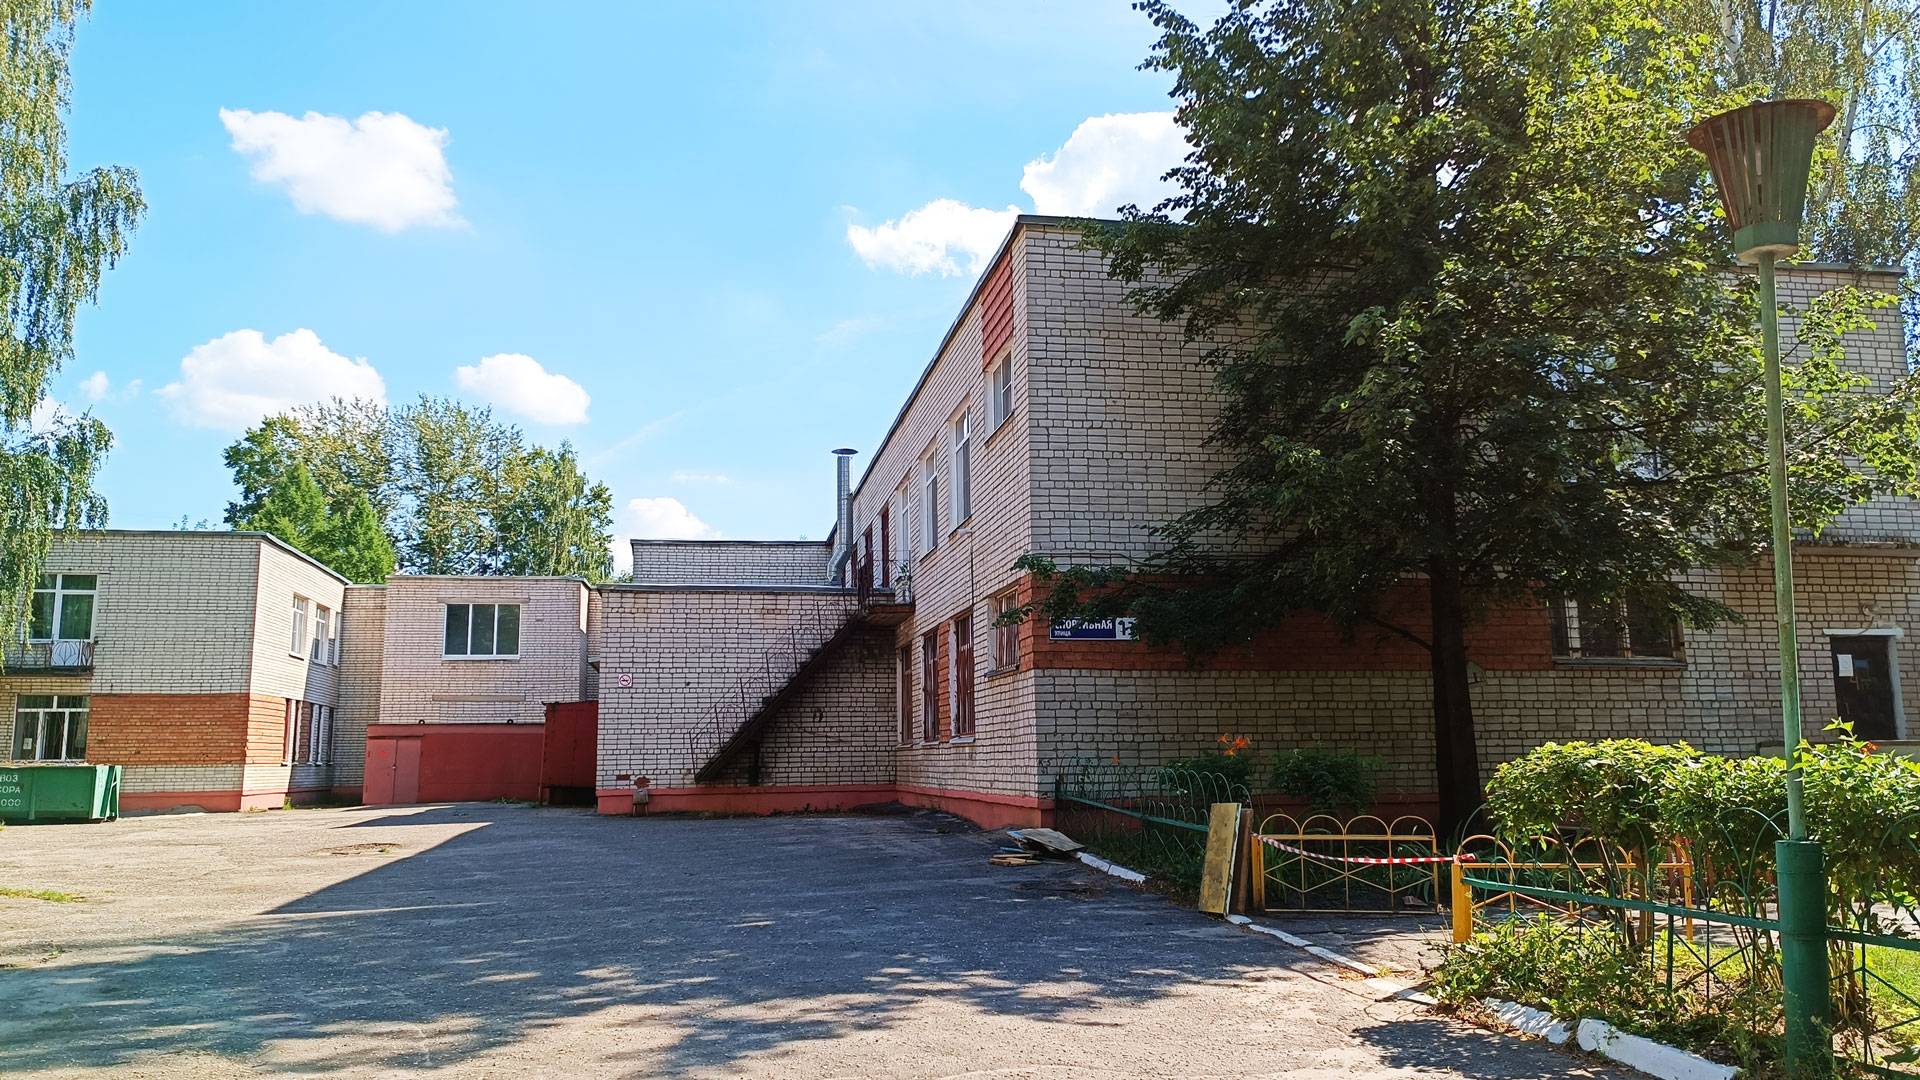 Детский сад 5 Ярославль: общий вид здания.